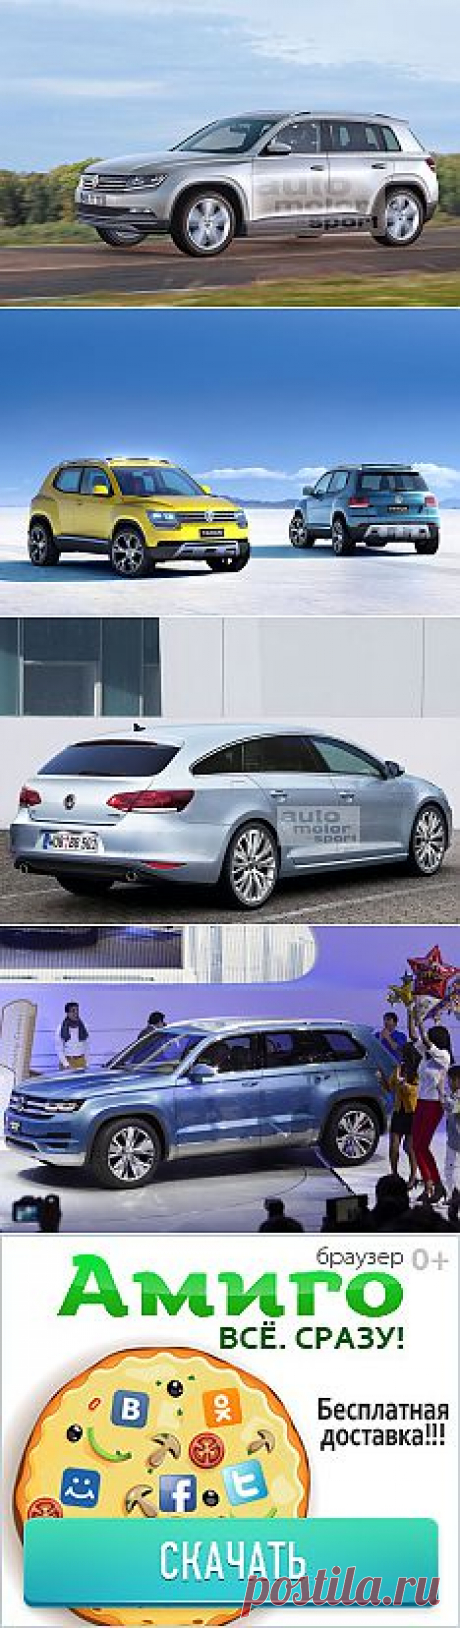 Новые Volkswagen: Taigun, Tiguan и Passat - автоновости - Авто@Mail.Ru